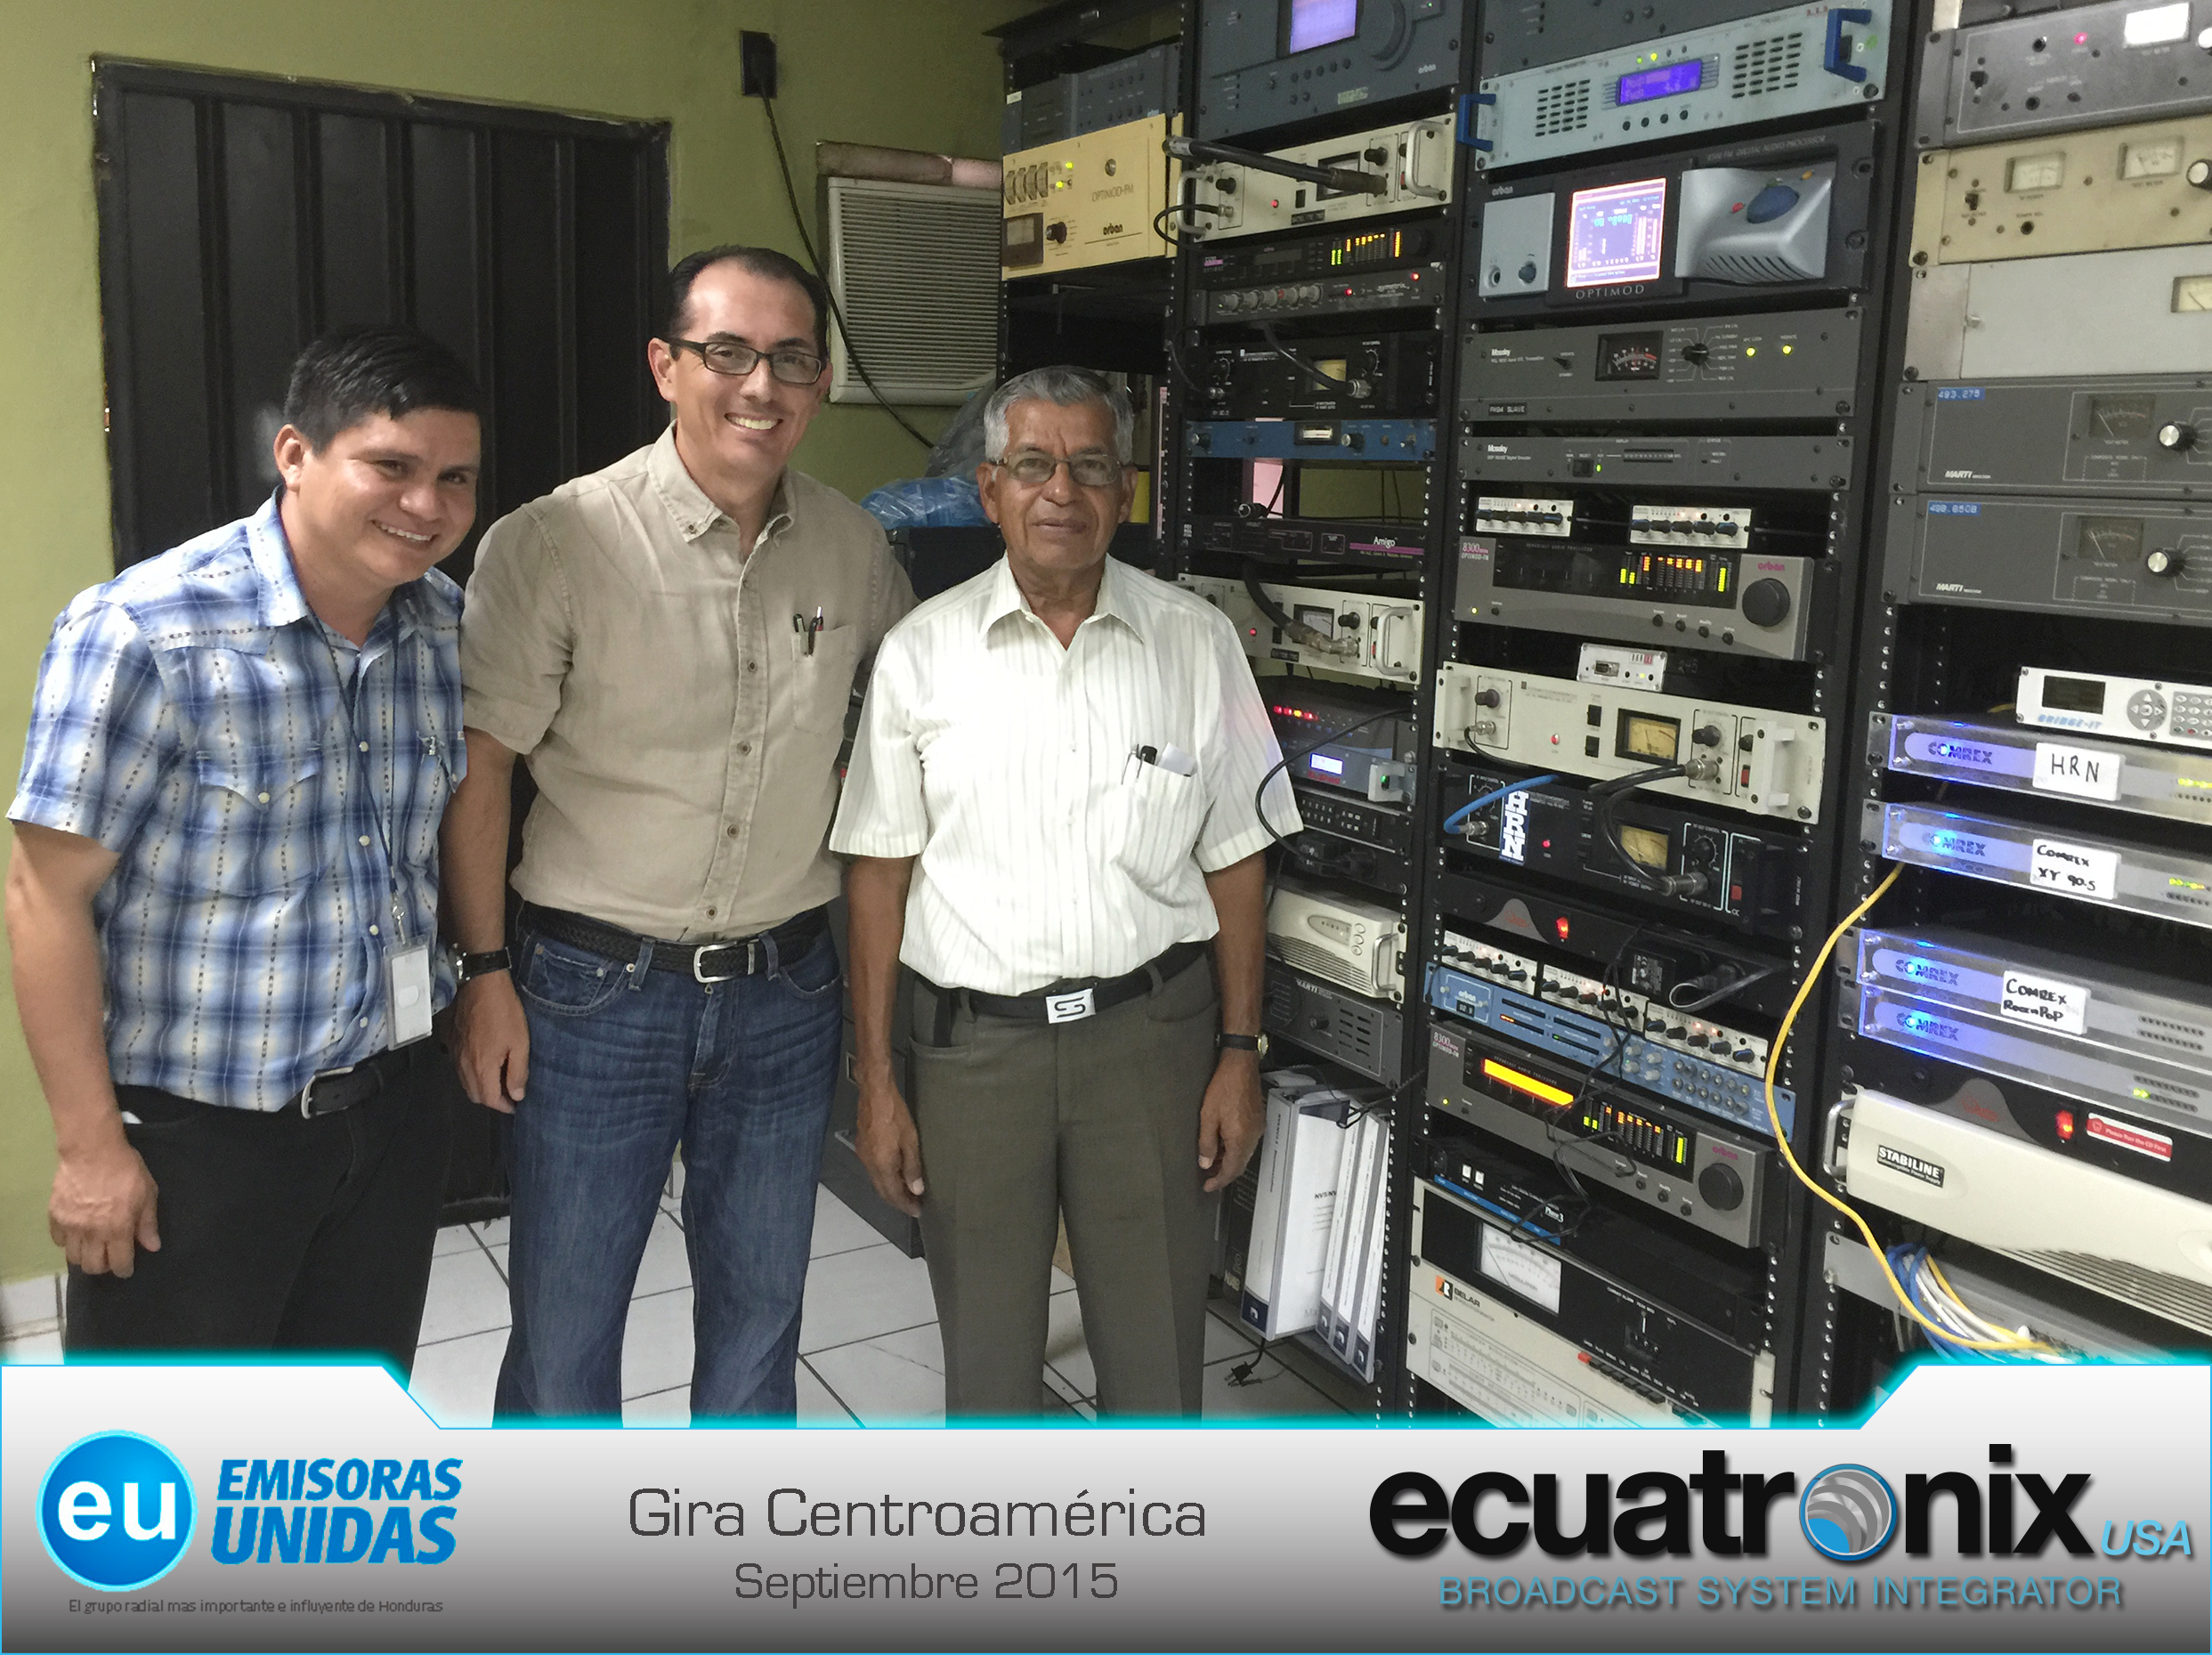 ecuatronix-usa-Honduras-emisoras-unidas